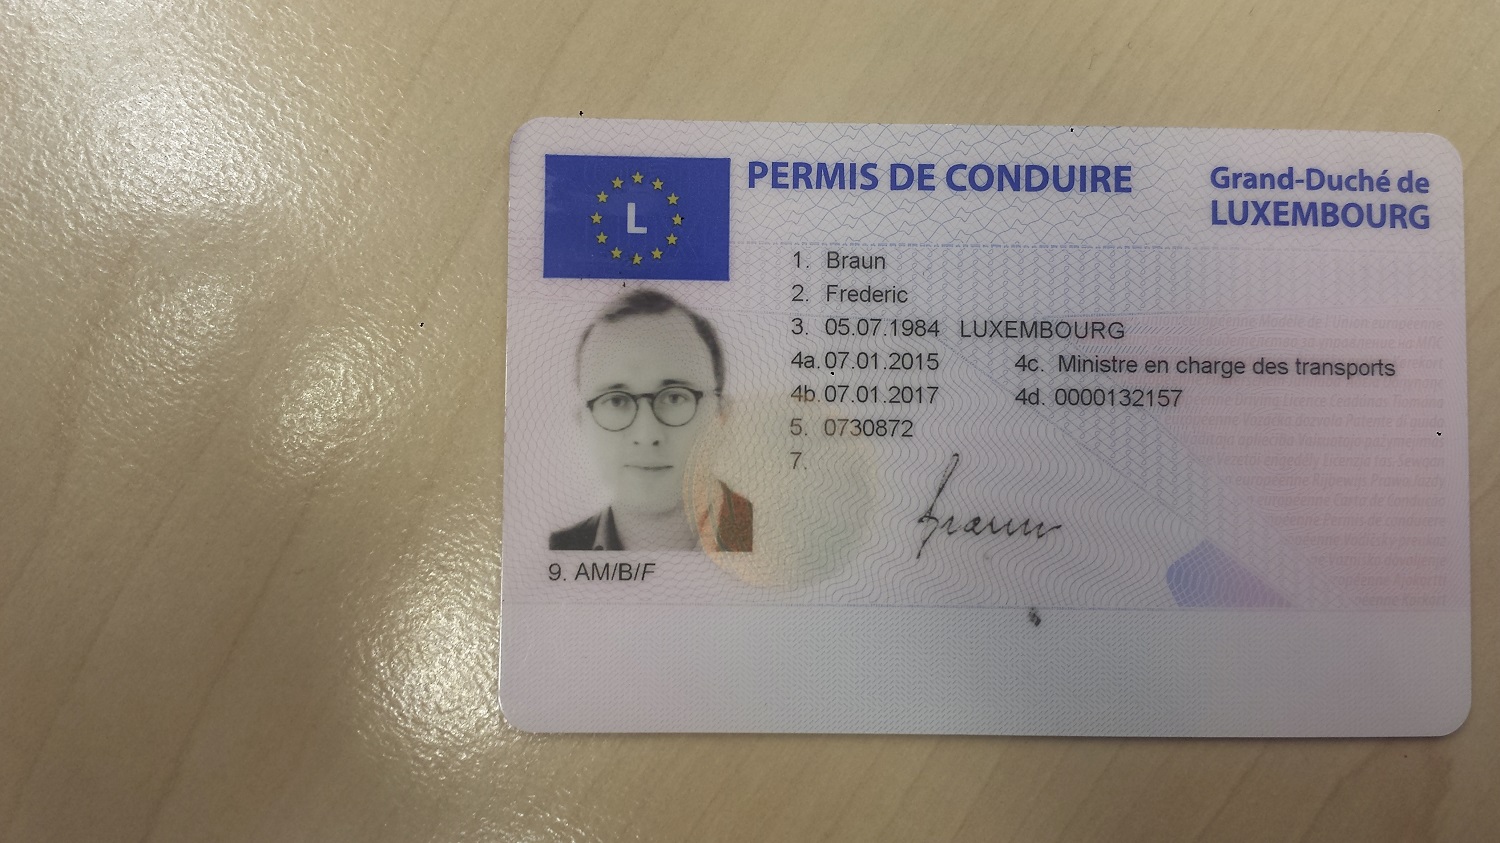 Permis de conduire - Secteurs - Portail TRANSPORTS - Luxembourg